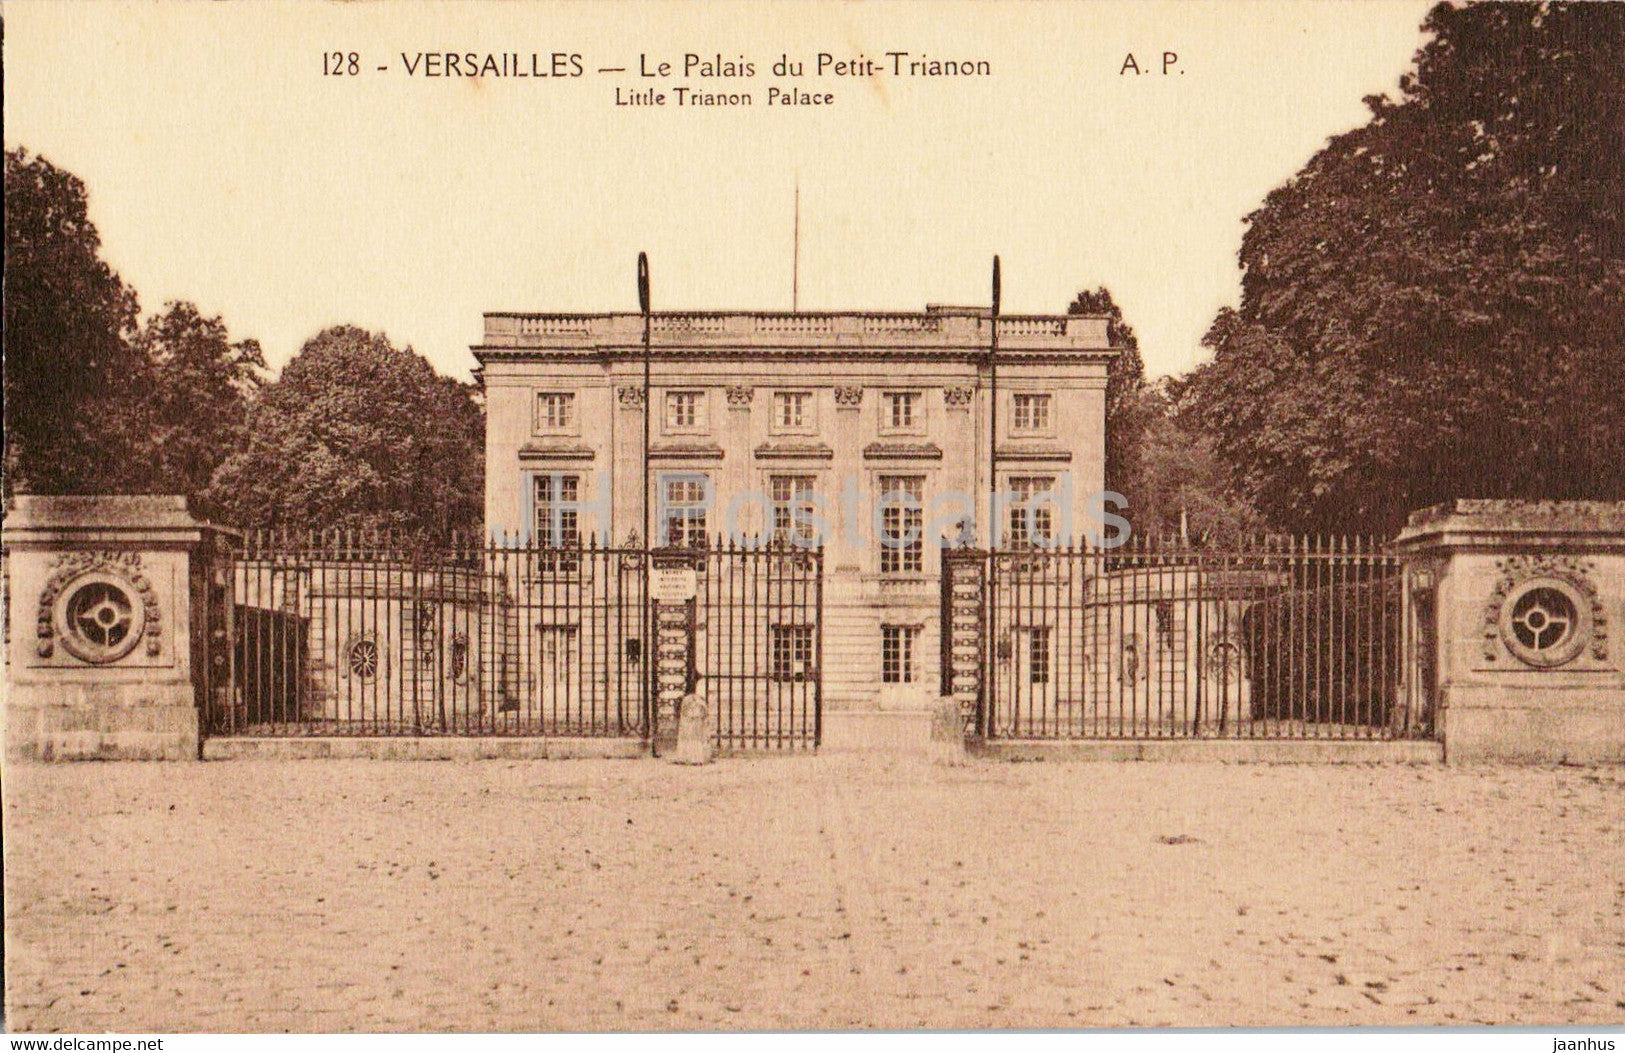 Versailles - Les Palais du Petit Trianon - Little Trianon Palace - 128 - old postcard - France - unused - JH Postcards